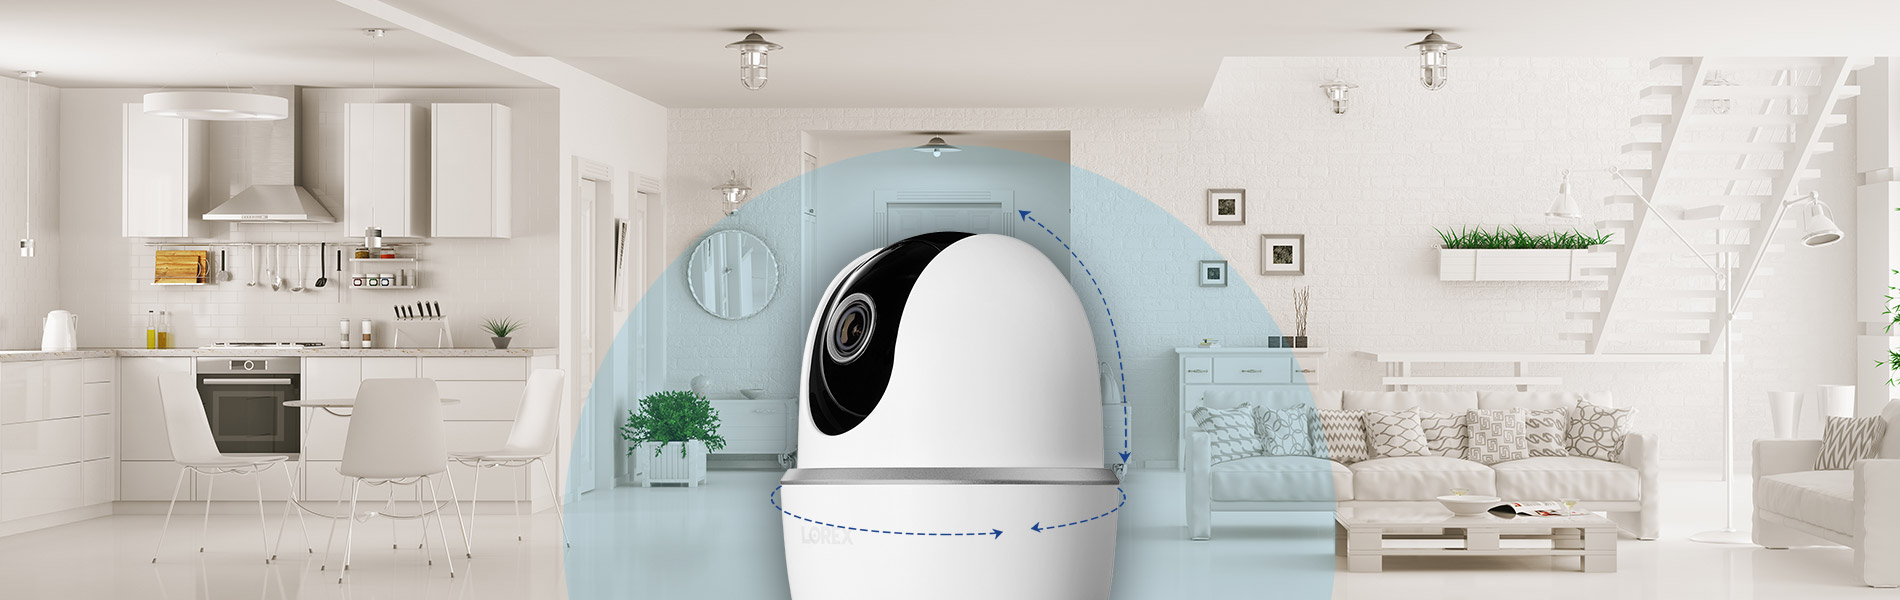 pan-tilt smart home indoor security camera